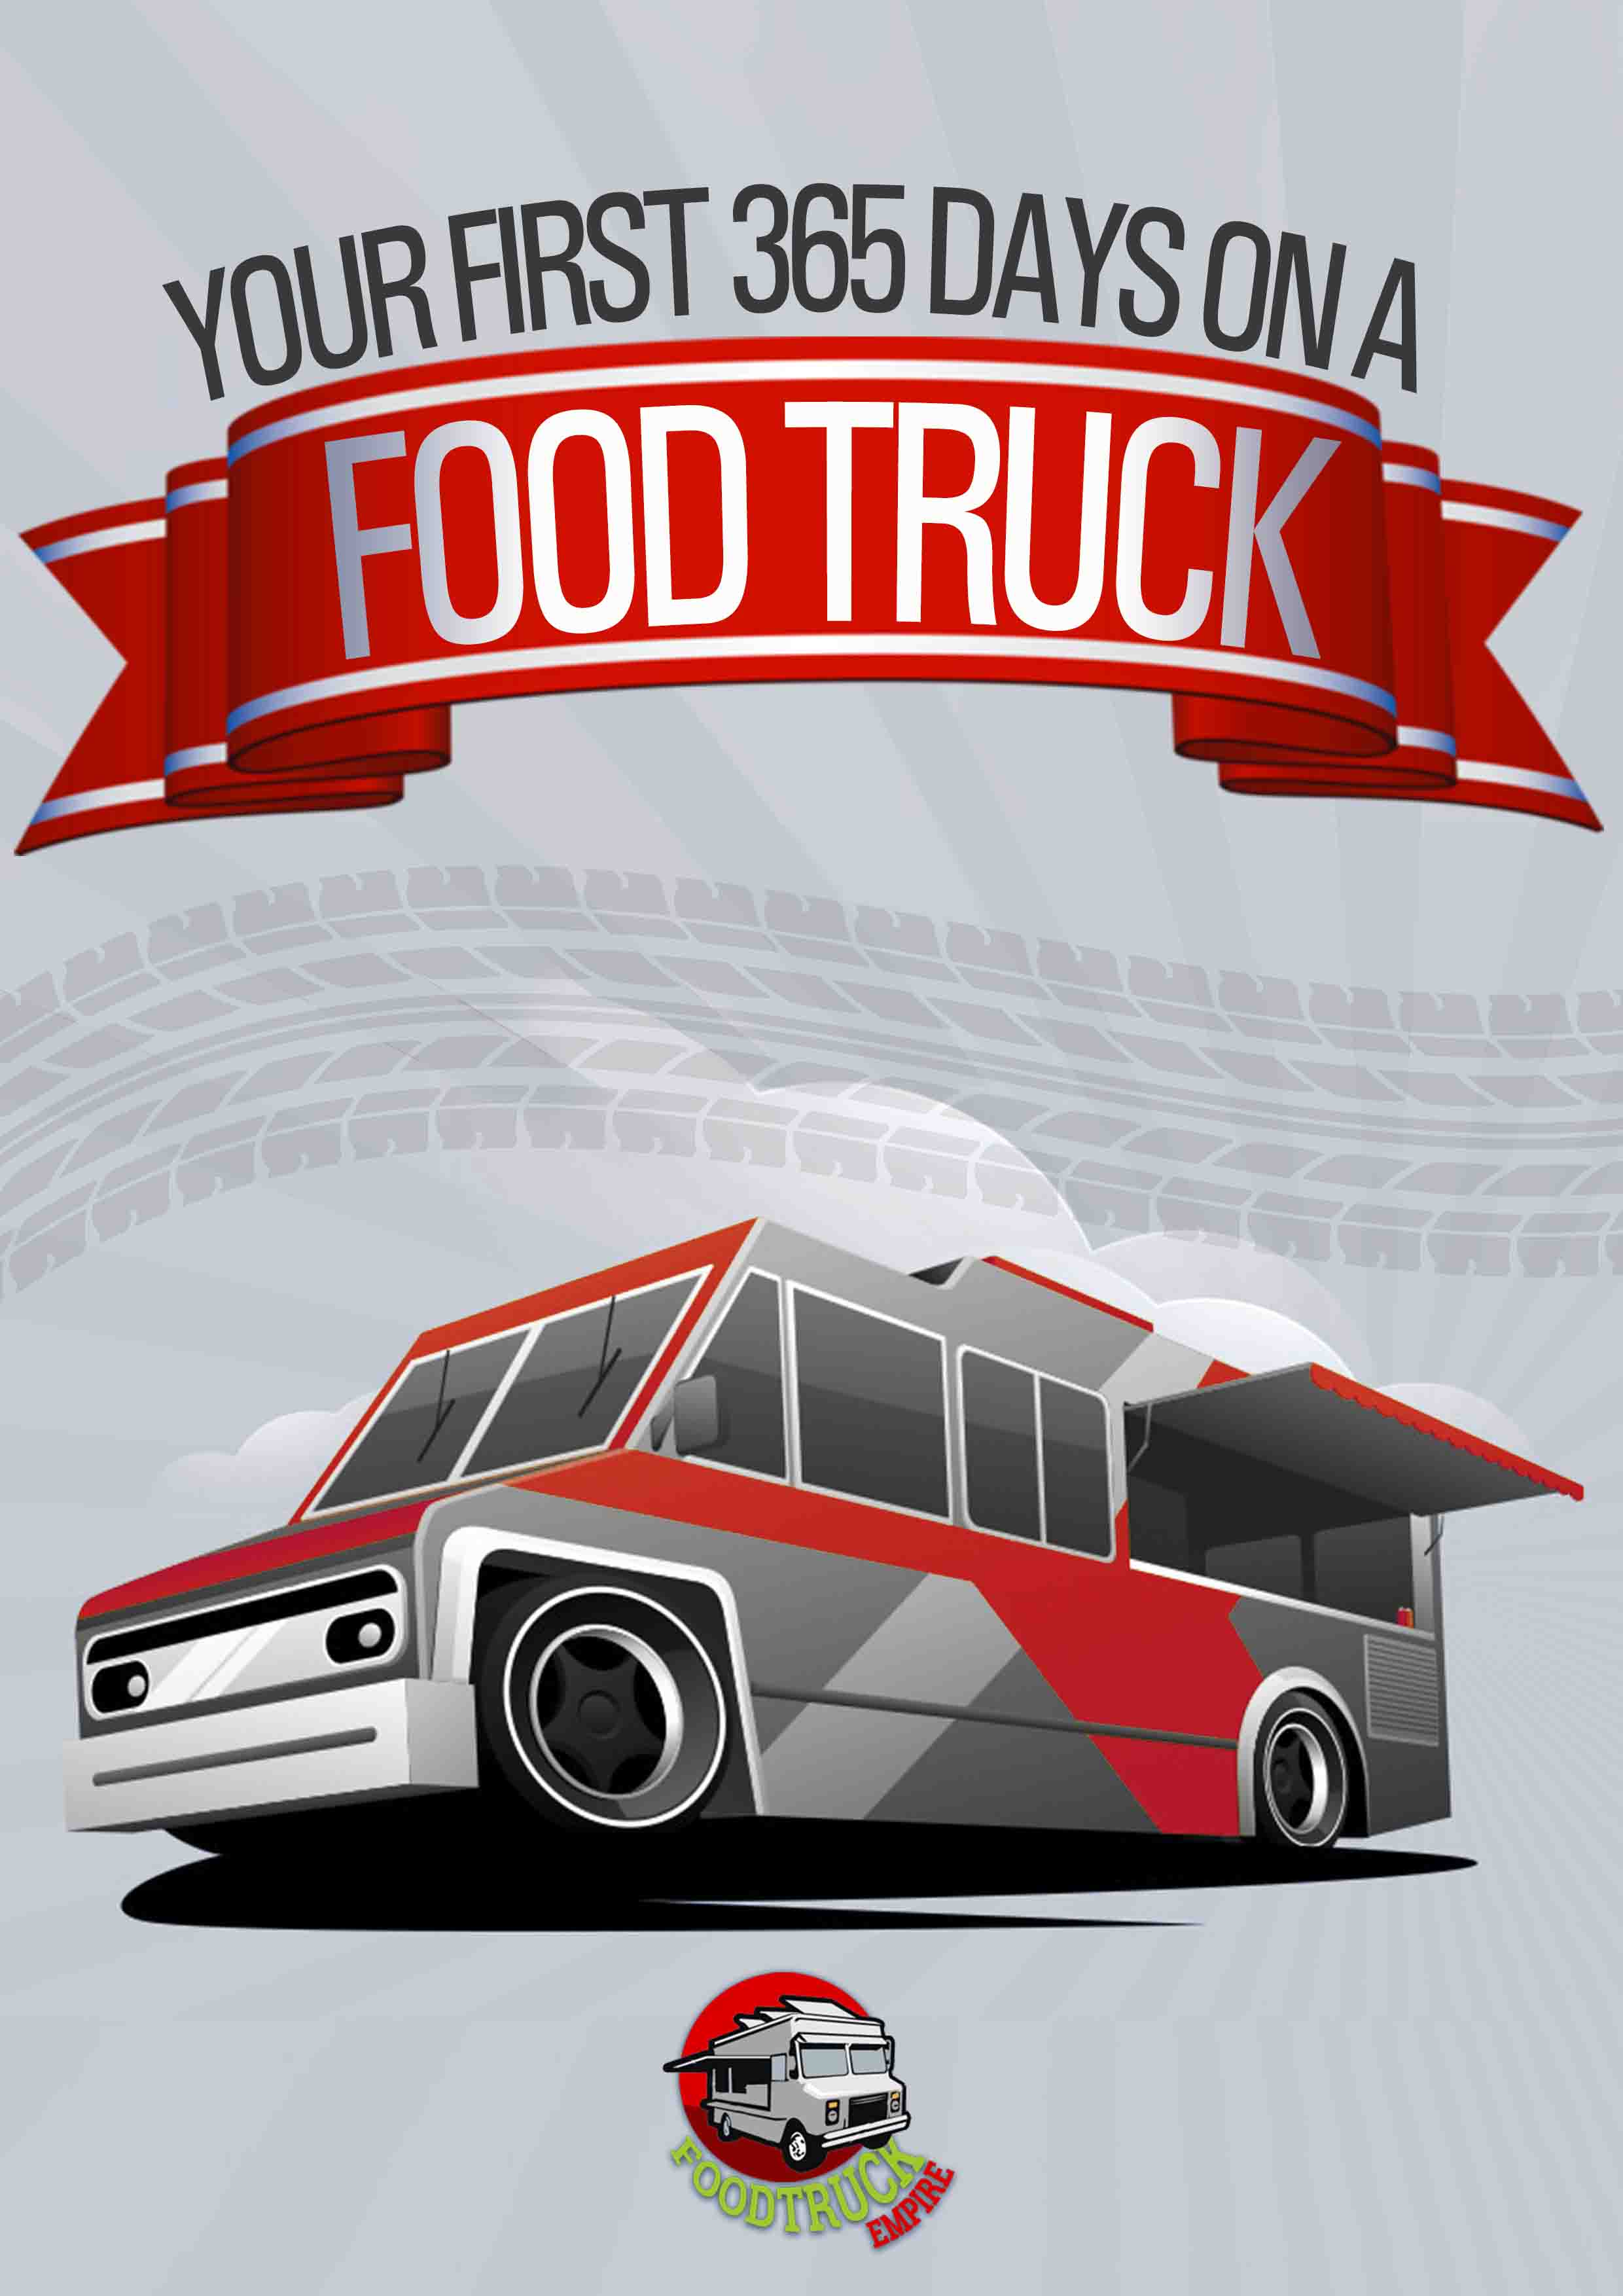 a food truck business plan